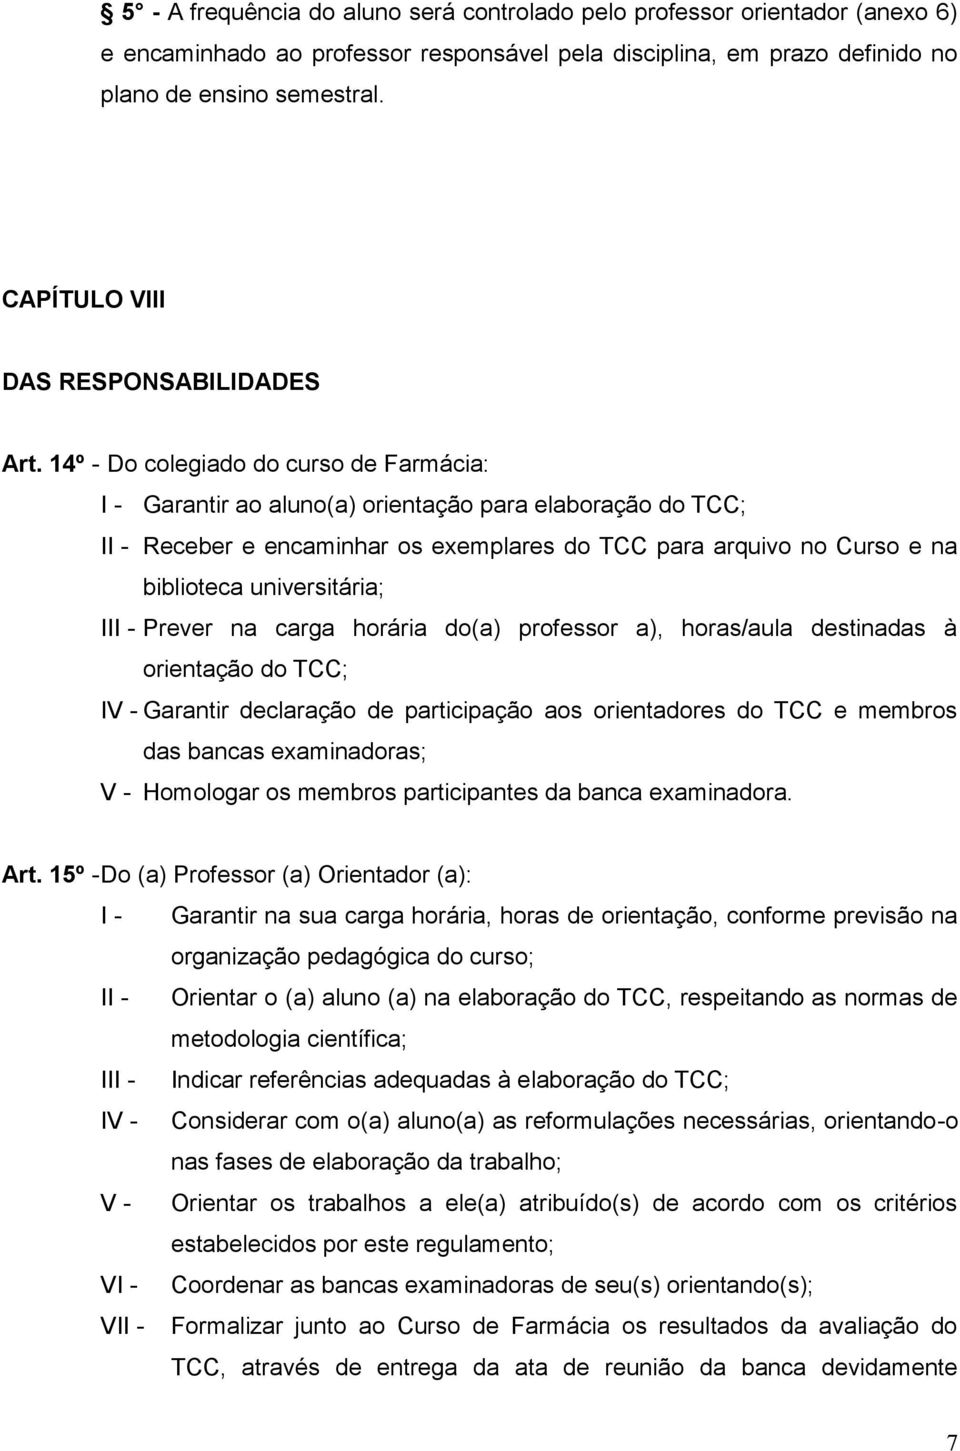 14º - Do colegiado do curso de Farmácia: I - Garantir ao aluno(a) orientação para elaboração do TCC; II - Receber e encaminhar os exemplares do TCC para arquivo no Curso e na biblioteca